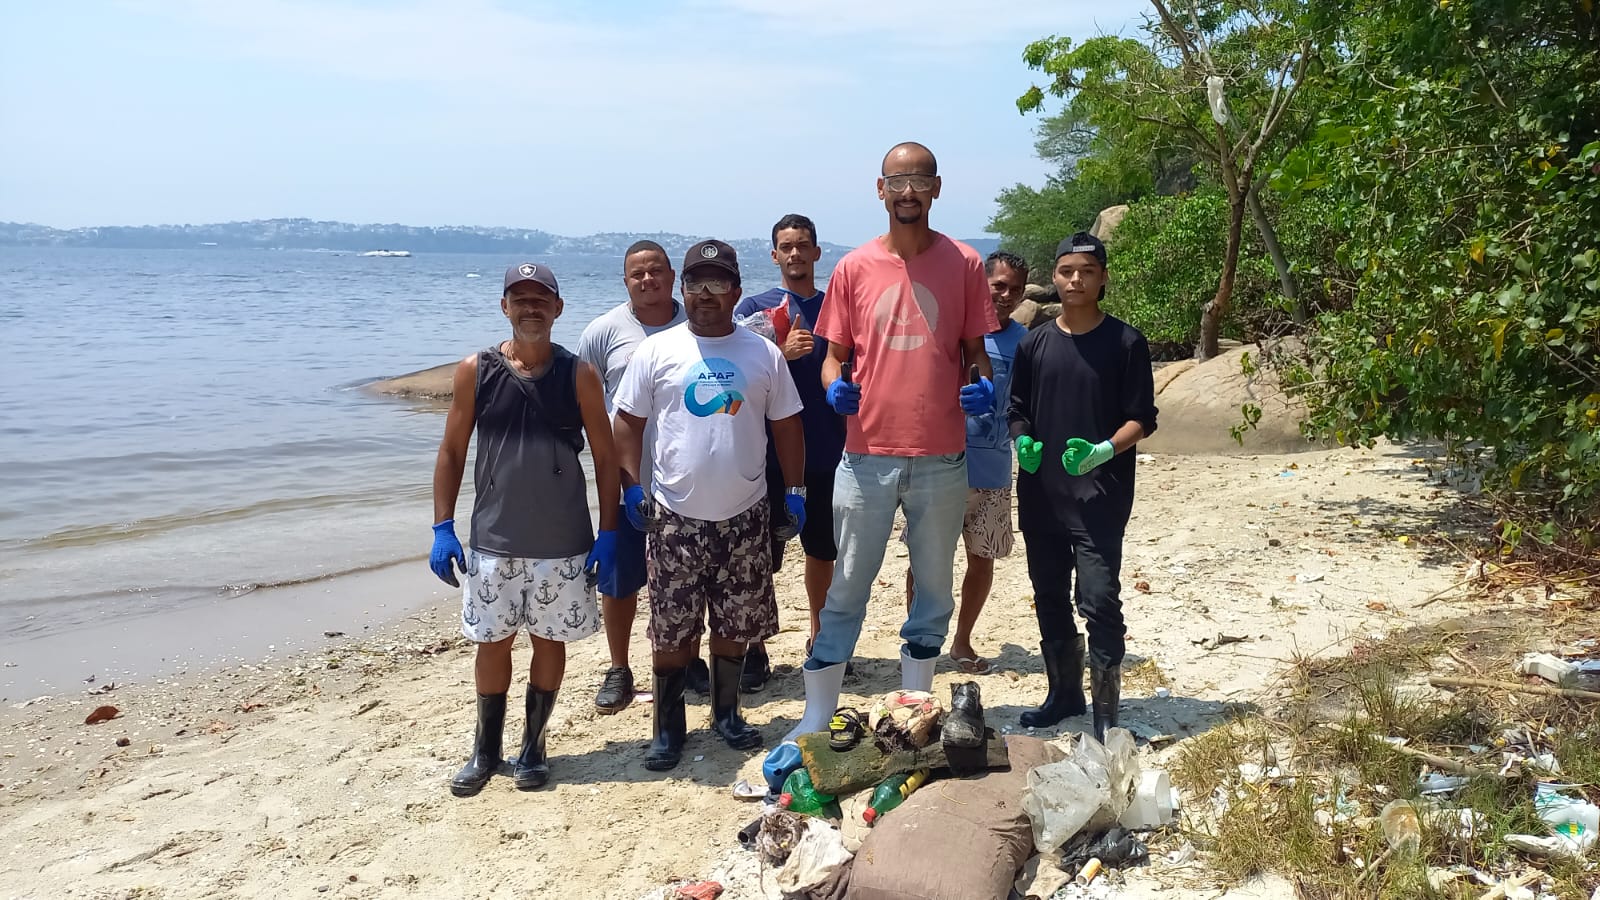 Parceria promove limpeza da Baía de Guanabara para retirar 100 toneladas de lixo